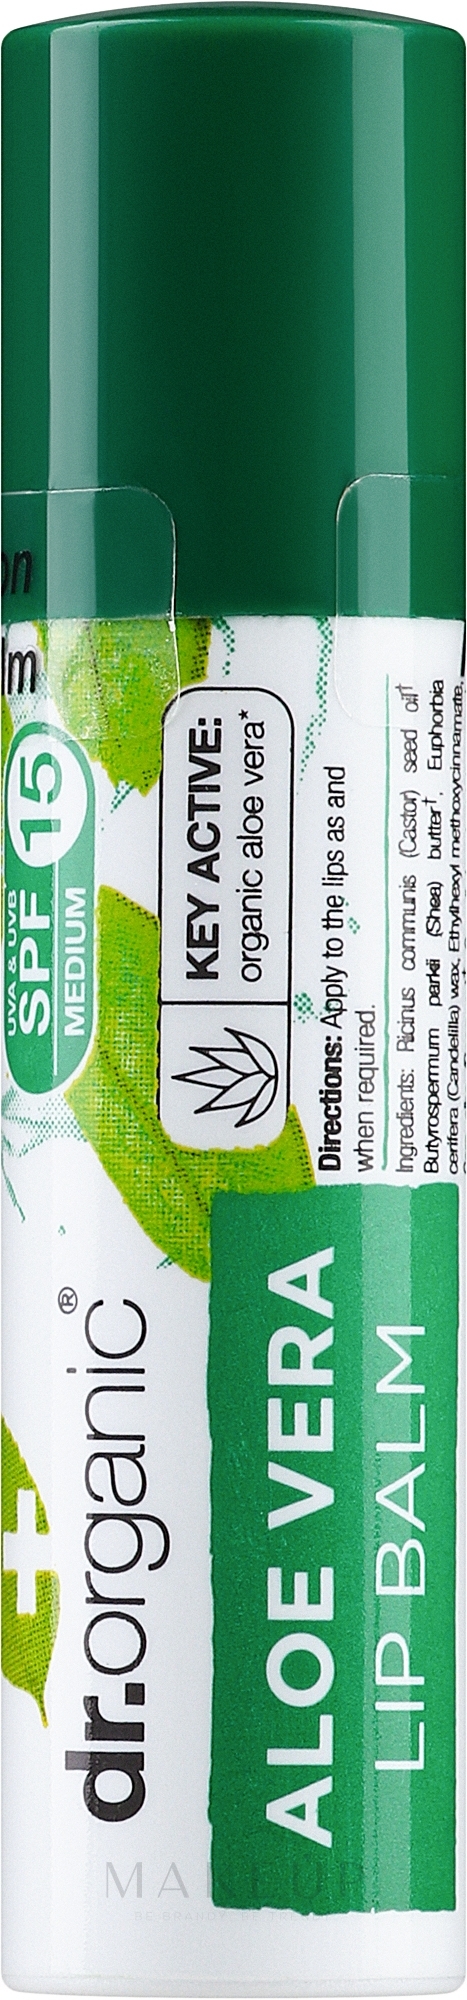 Lippenbalsam mit Aloe Vera - Dr. Organic Bioactive Skincare Aloe Vera Lip Care Stick SPF15 — Bild 5.7 ml